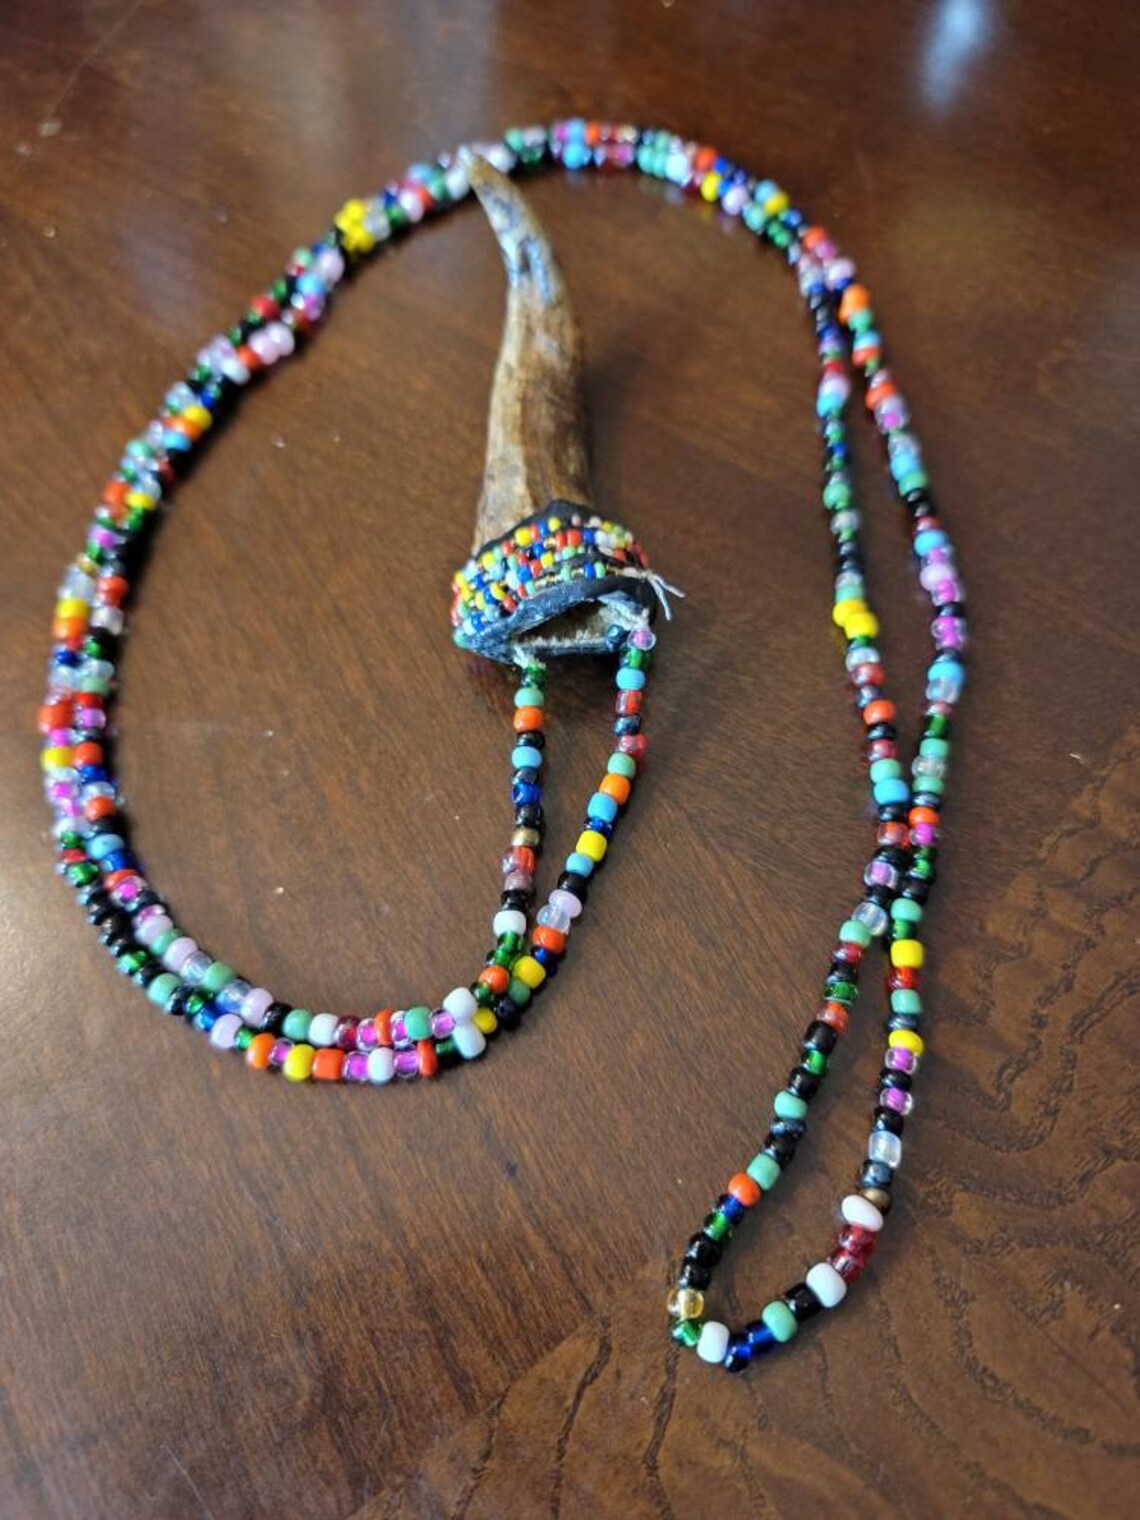 Necklace of Osain Santeria / Flag necklace amulet Palo Mayombe | Etsy